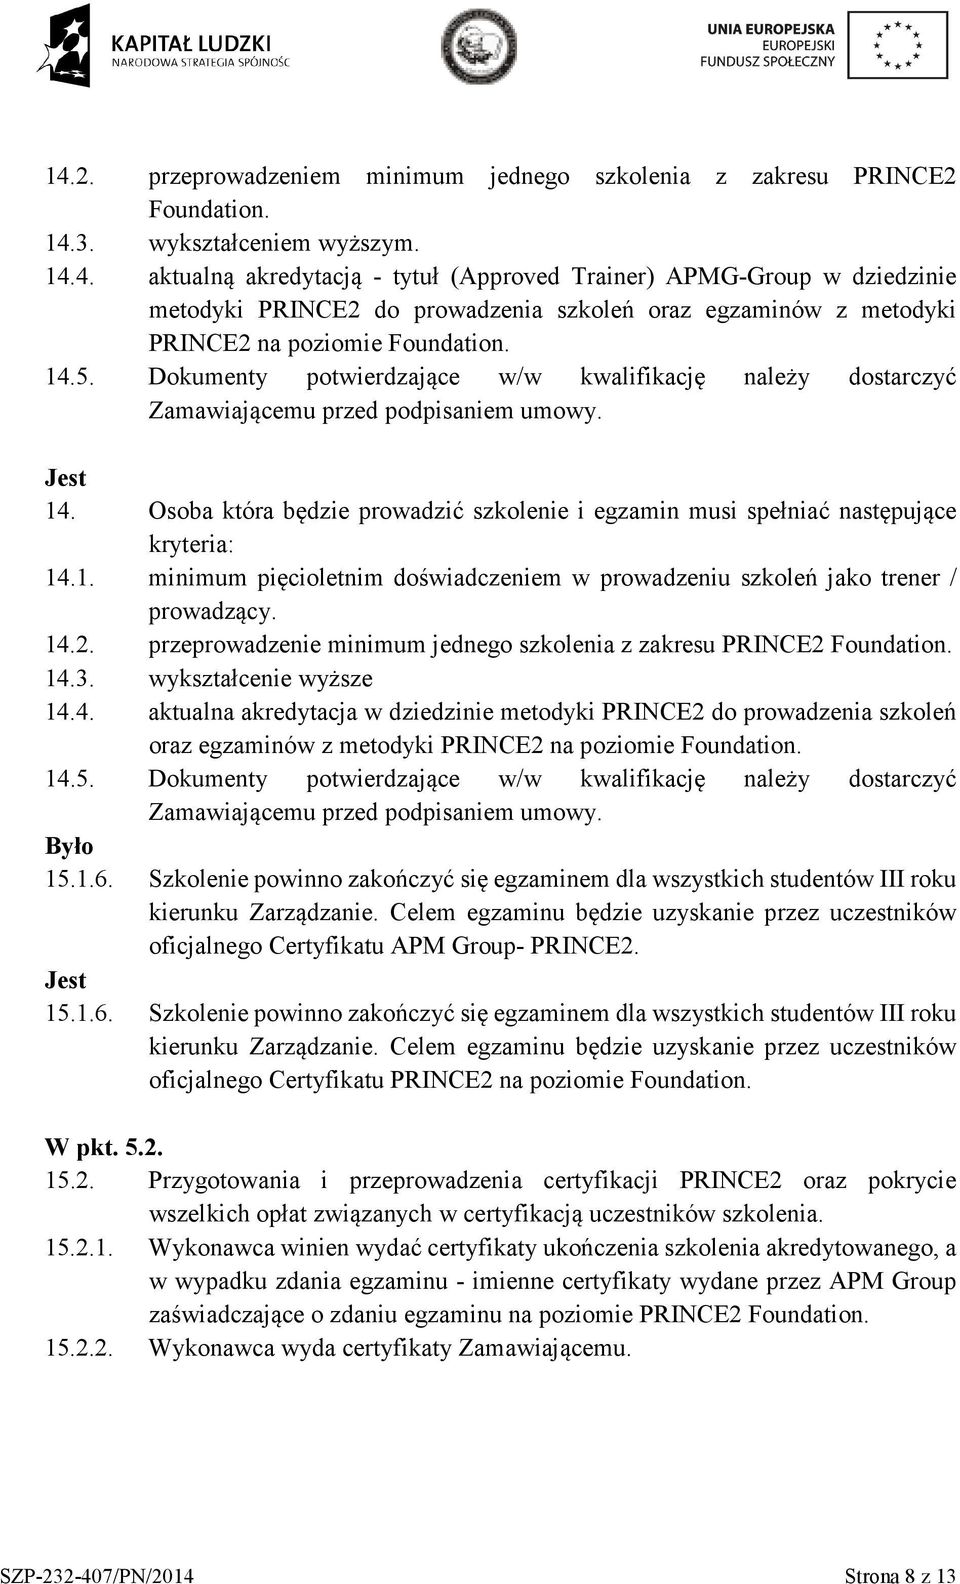 14.2. przeprowadzenie minimum jednego szkolenia z zakresu PRINCE2 Foundation. 14.3. wykształcenie wyższe 14.4. aktualna akredytacja w dziedzinie metodyki PRINCE2 do prowadzenia szkoleń oraz egzaminów z metodyki PRINCE2 na poziomie Foundation.